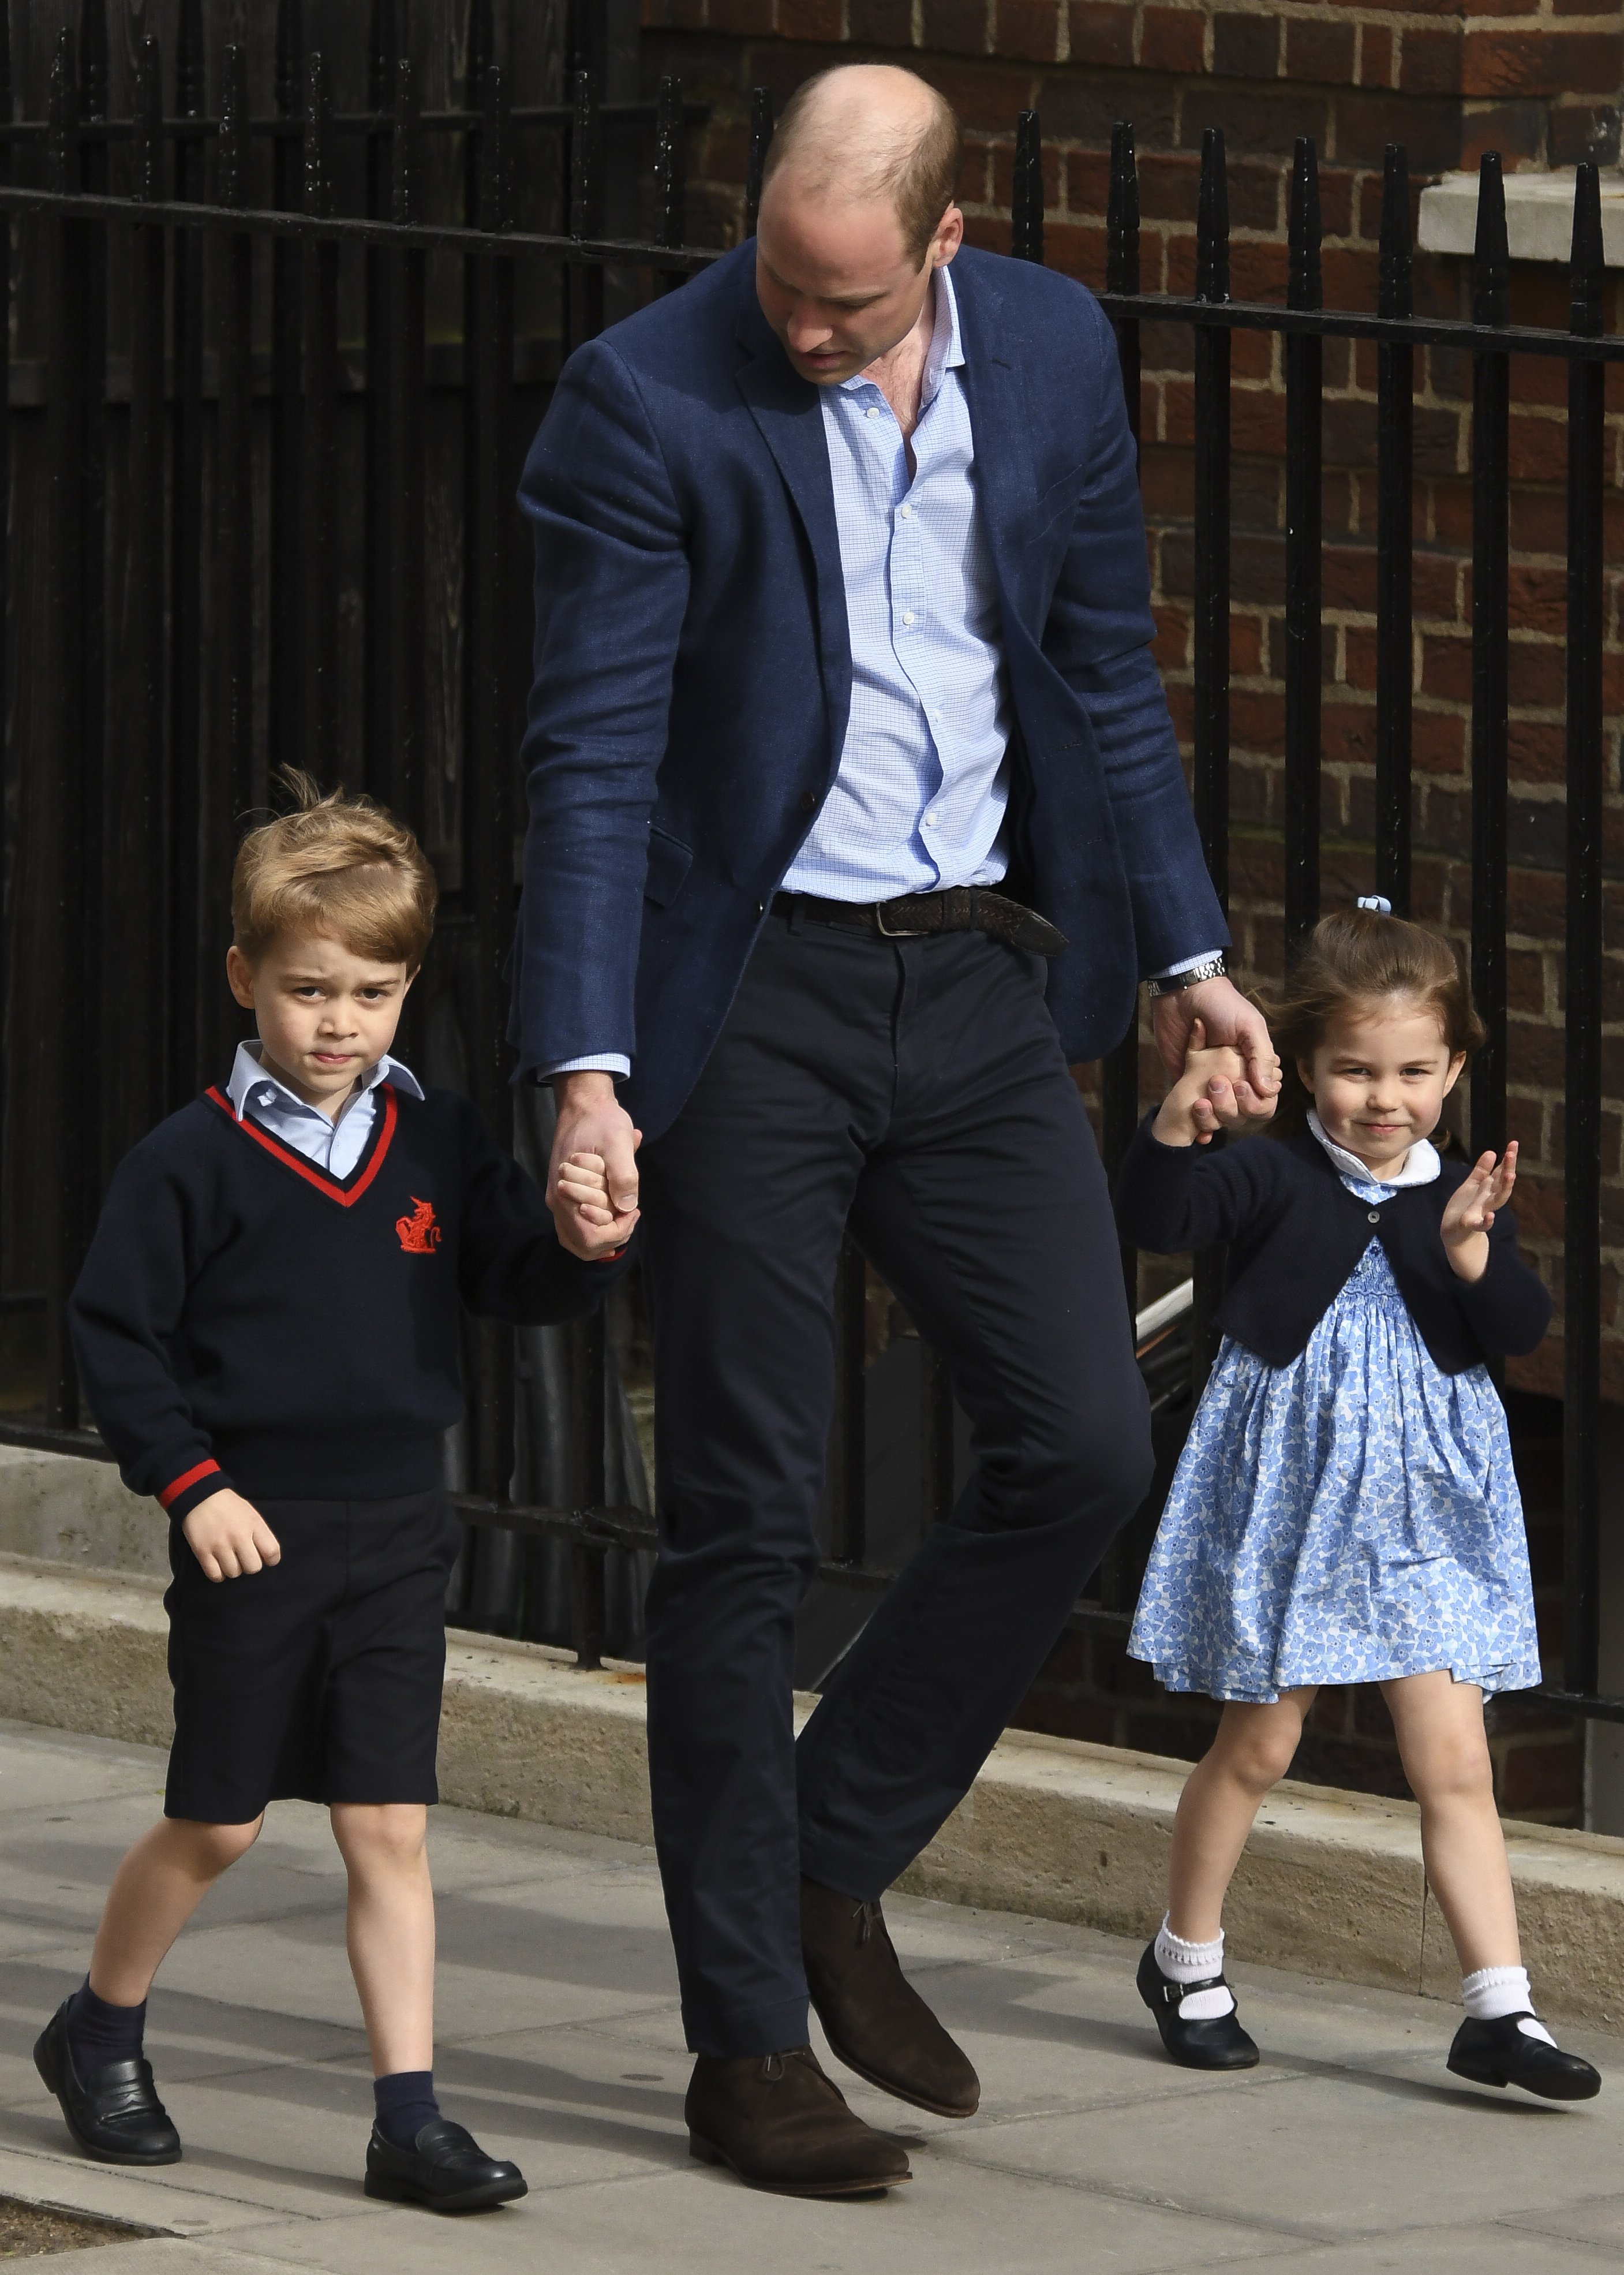 Le Prince William, le Prince George, et la Princesse Charlotte au Lindo Wing après que la Duchesse Kate ait mis au monde son autre fils au St Mary's Hospital, 23 avril 2018, a Londres, Angleterre. | Getty Images